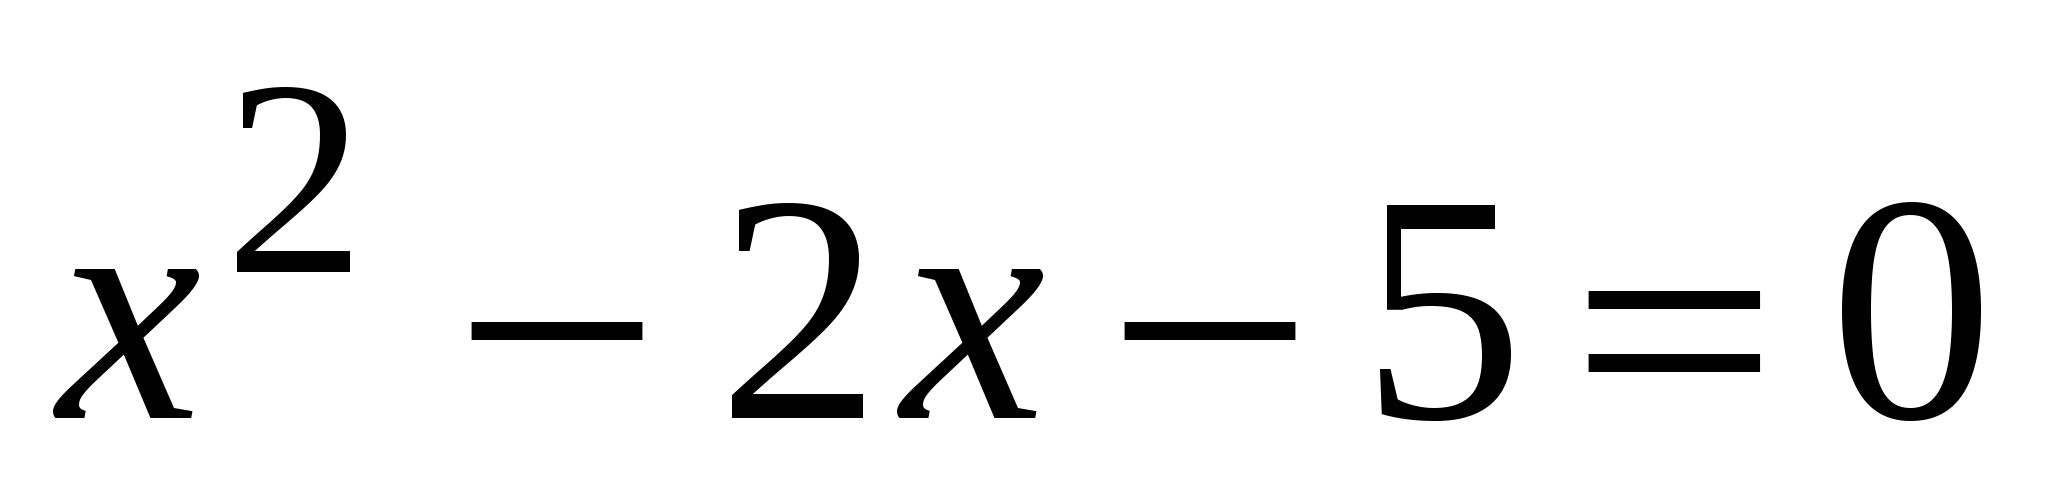 Тест по математике для 8 класса «Квадратные уравнения»